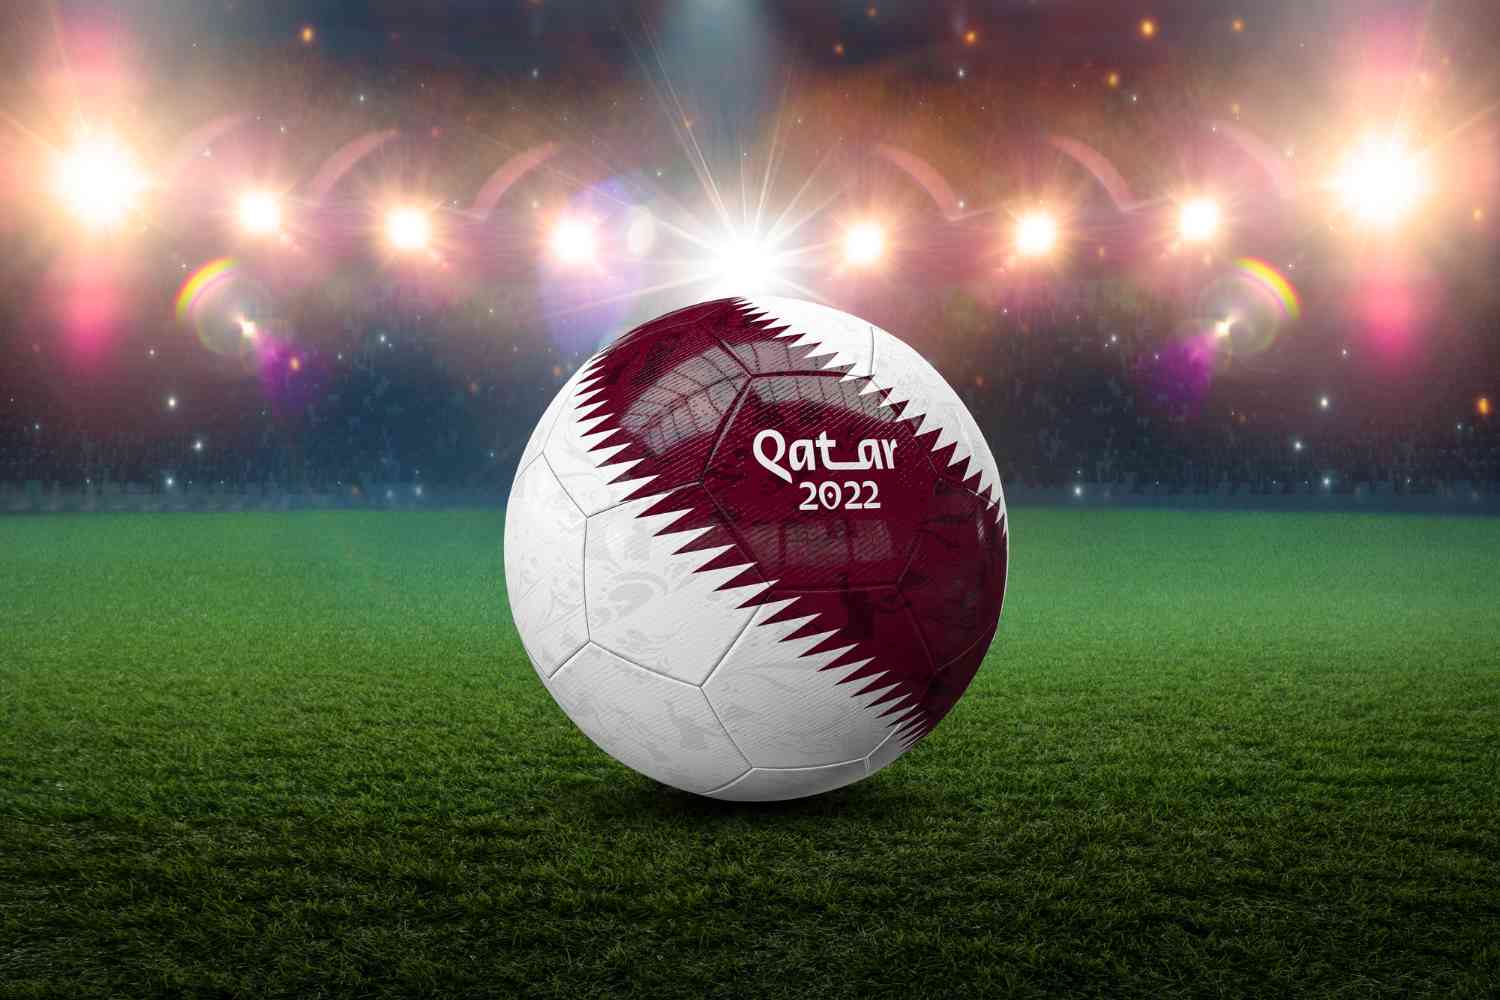 Ingressos Exclusivos para a Copa do Mundo FIFA Qatar 2022™ + Hospedagem